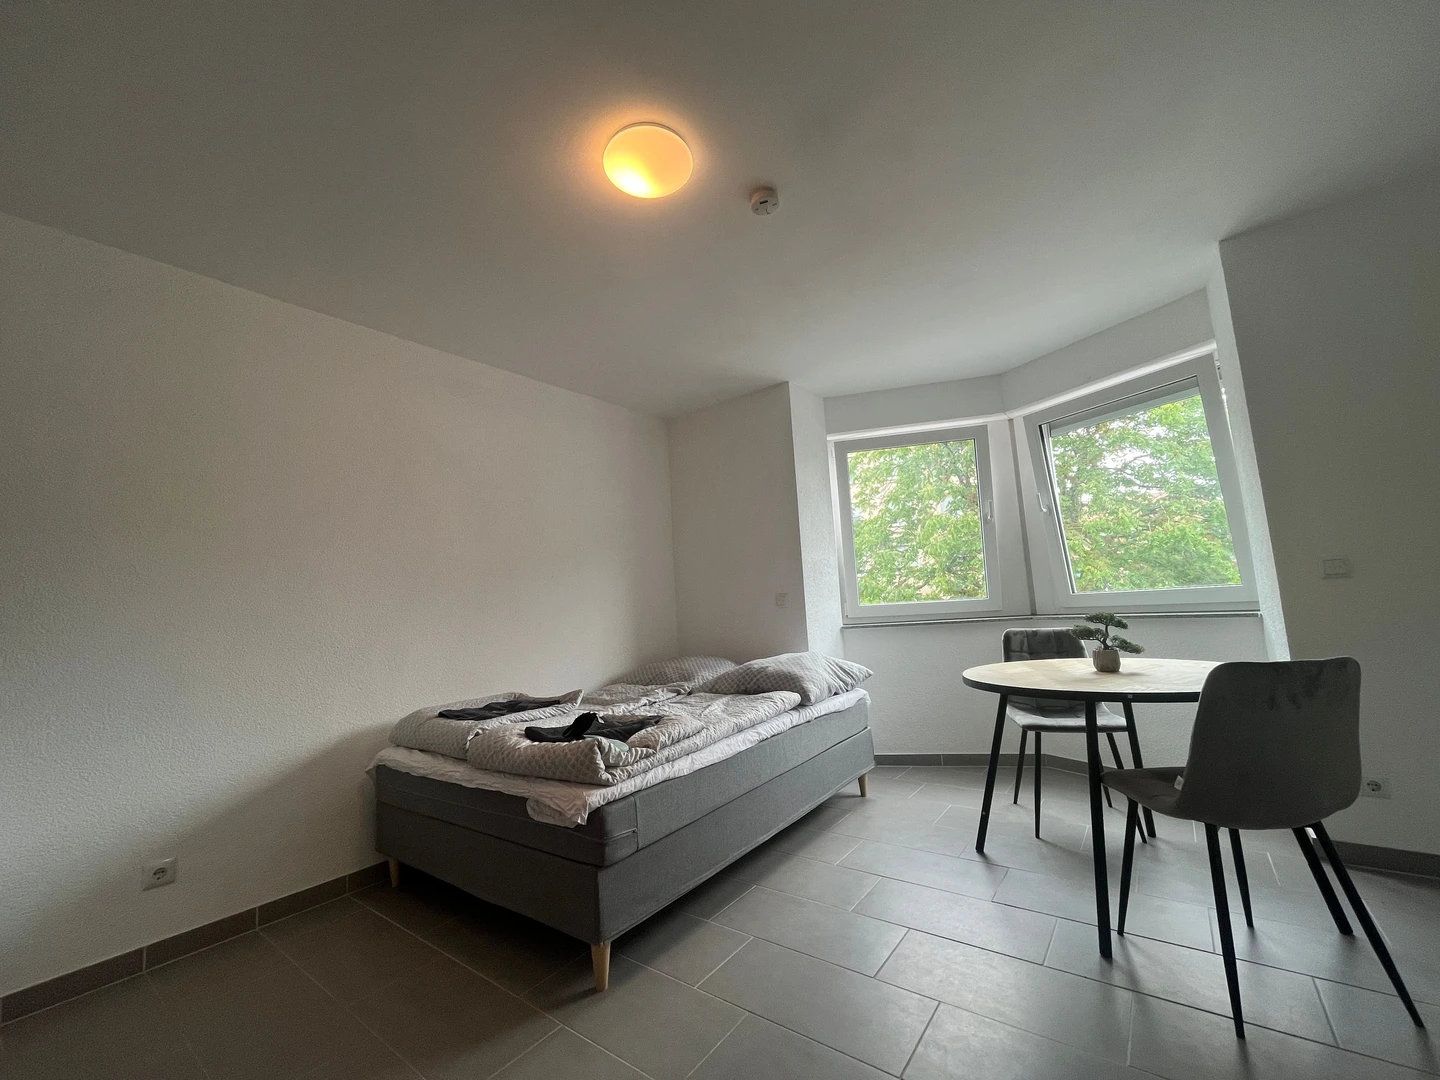 Alquiler de habitación en piso compartido en Karlsruhe